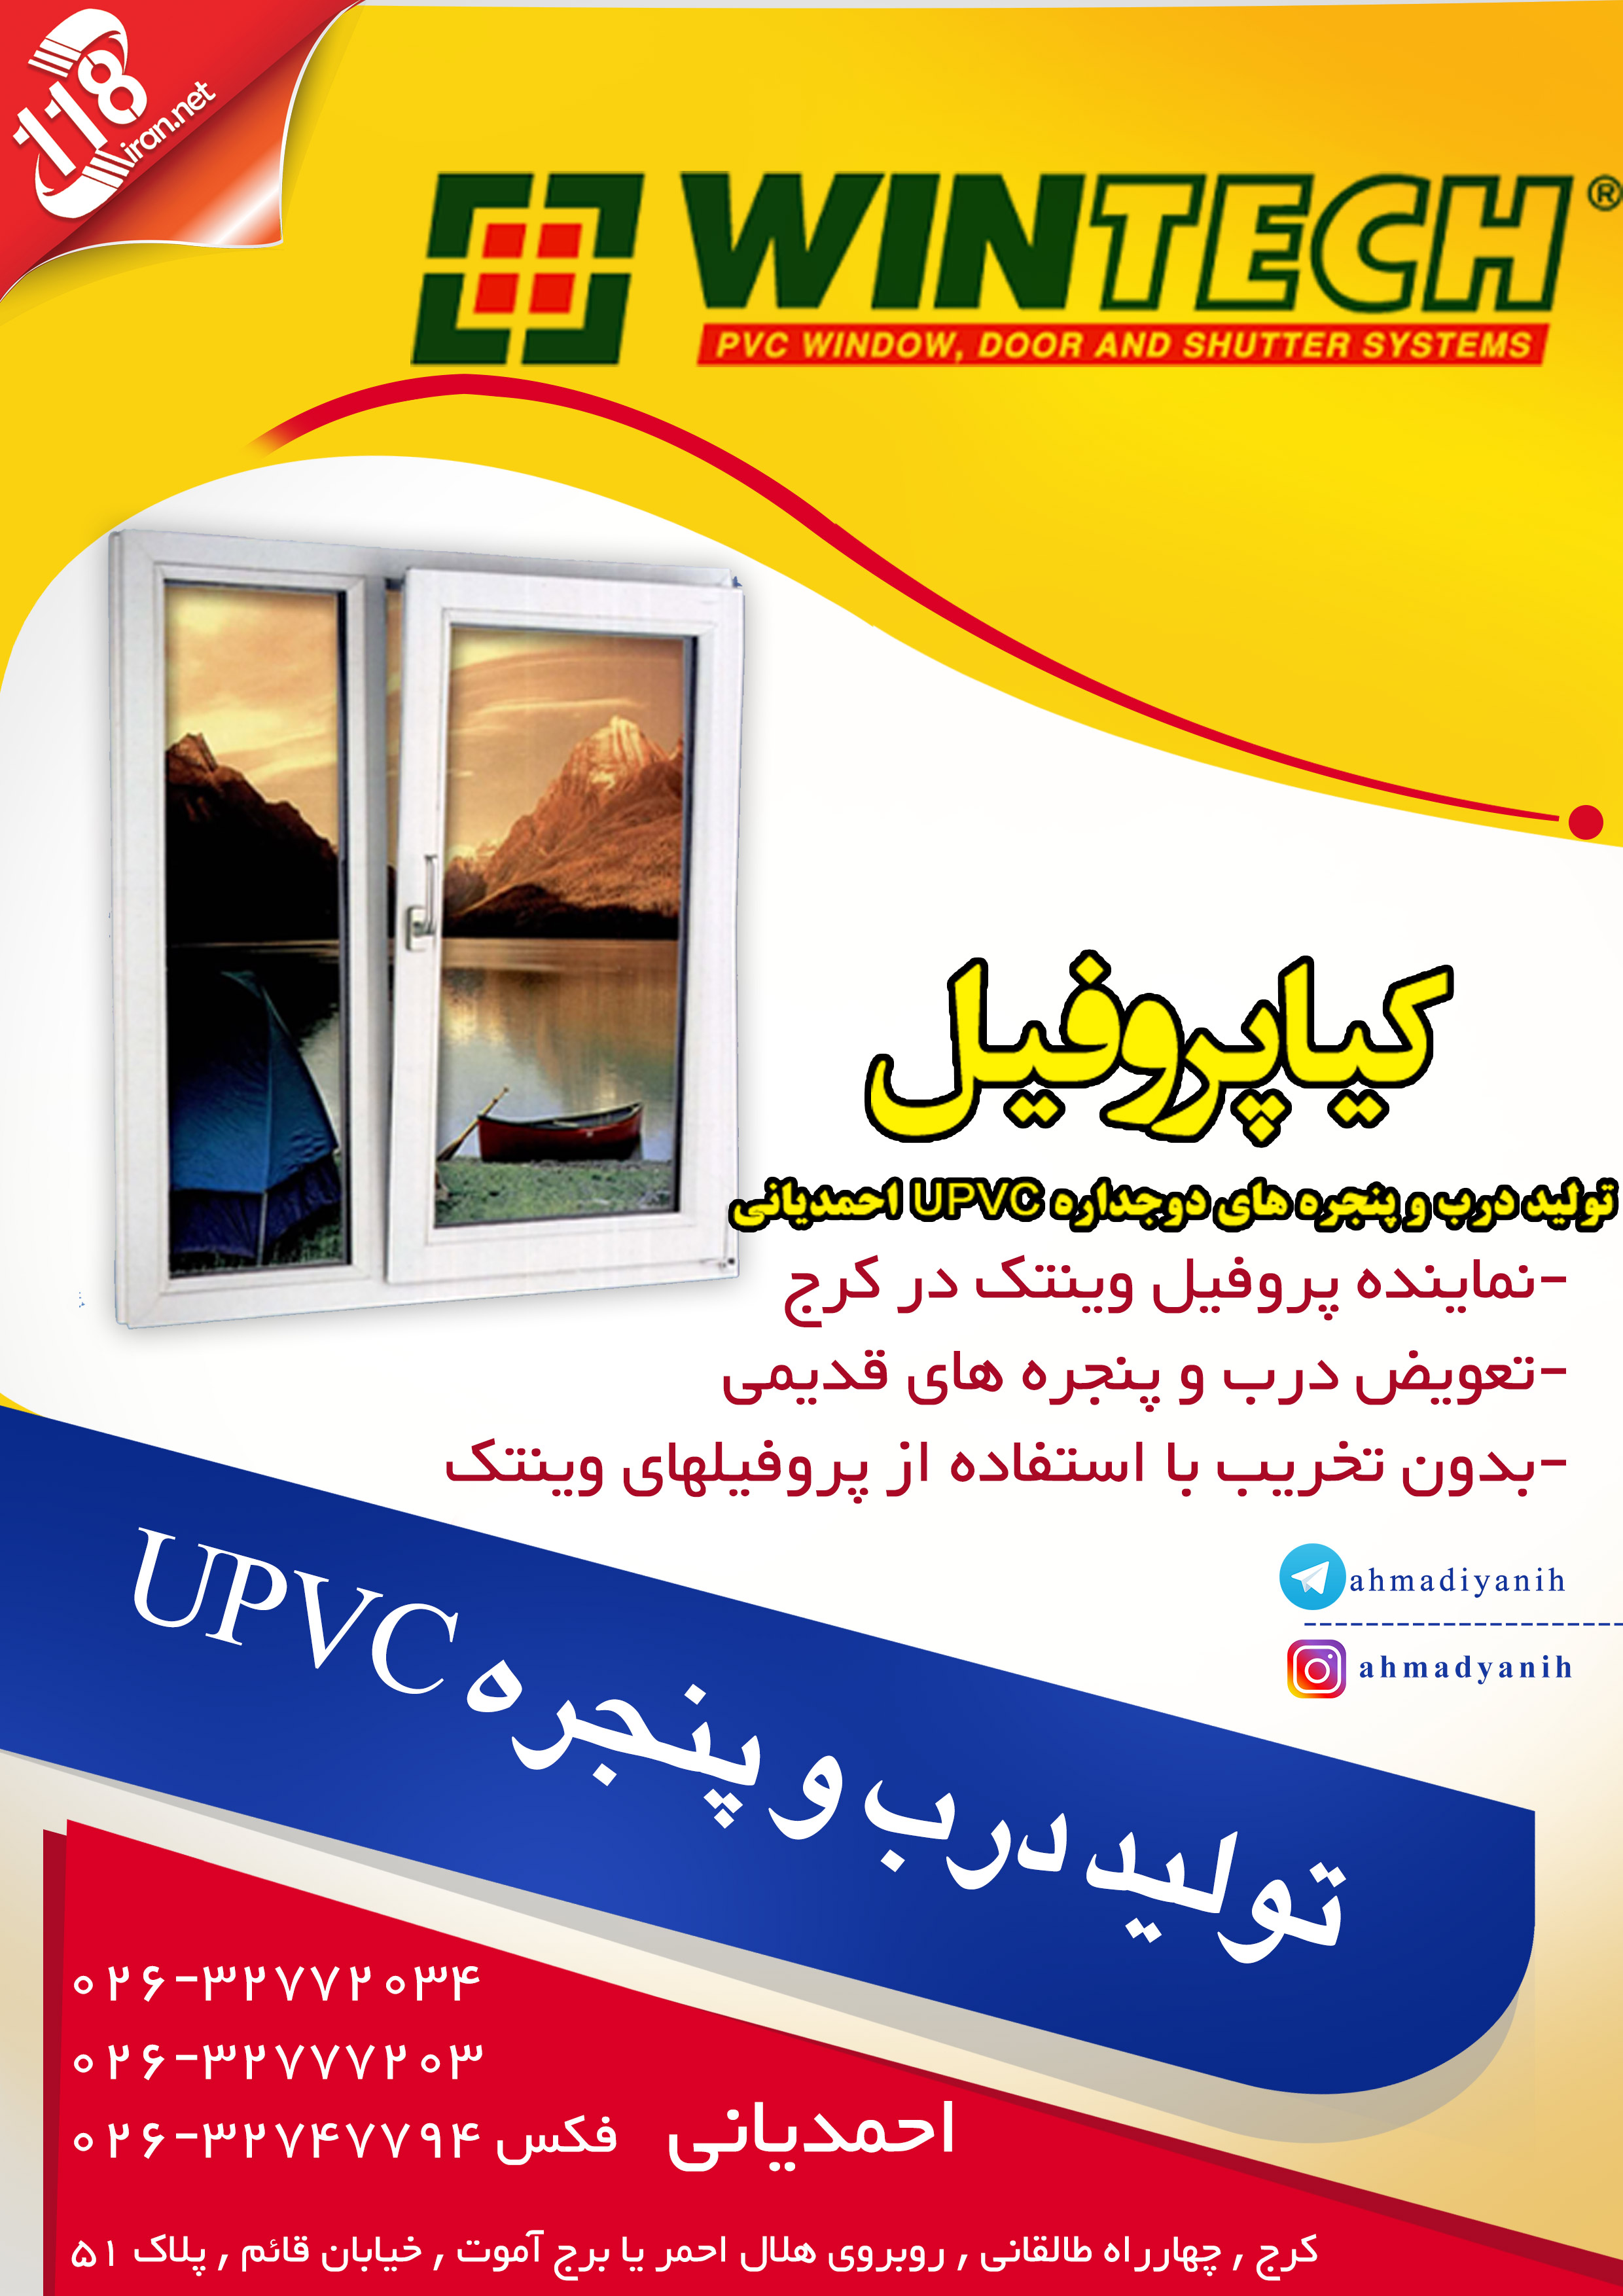 تولید درب و پنجره های دوجداره UPVC احمدیانی در کرج